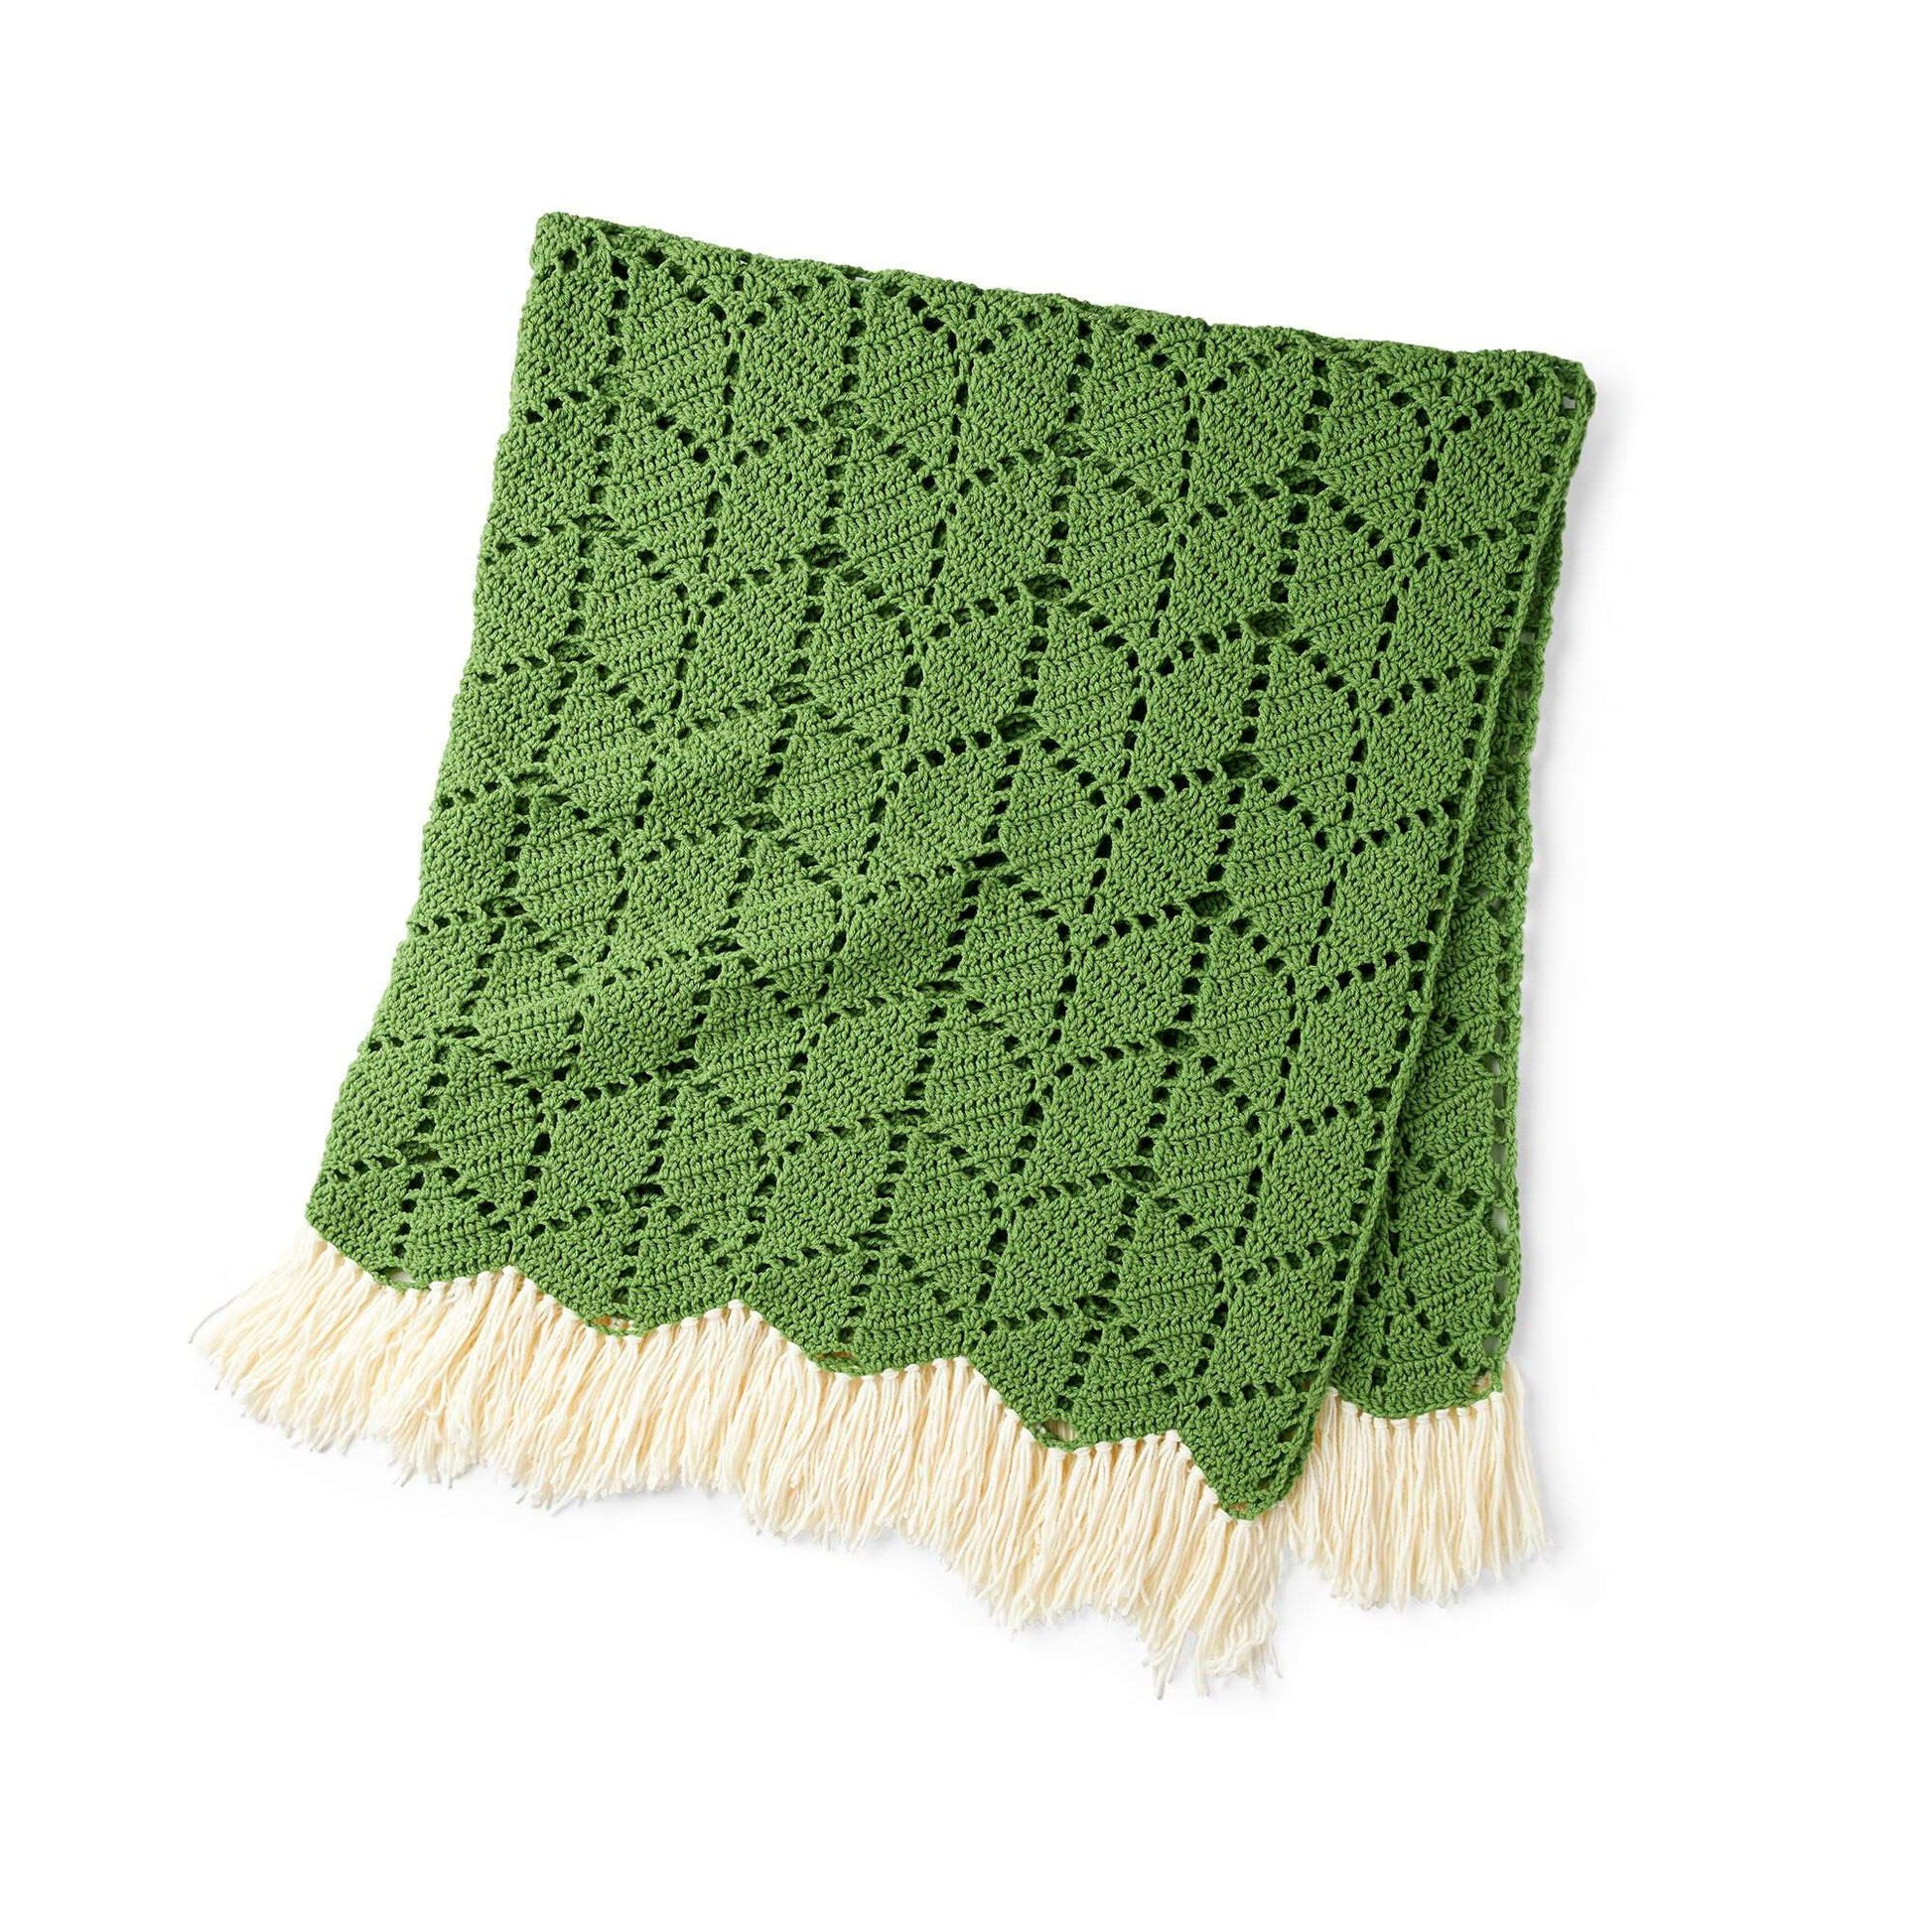 Free Bernat Growing Ivy Crochet Blanket Pattern